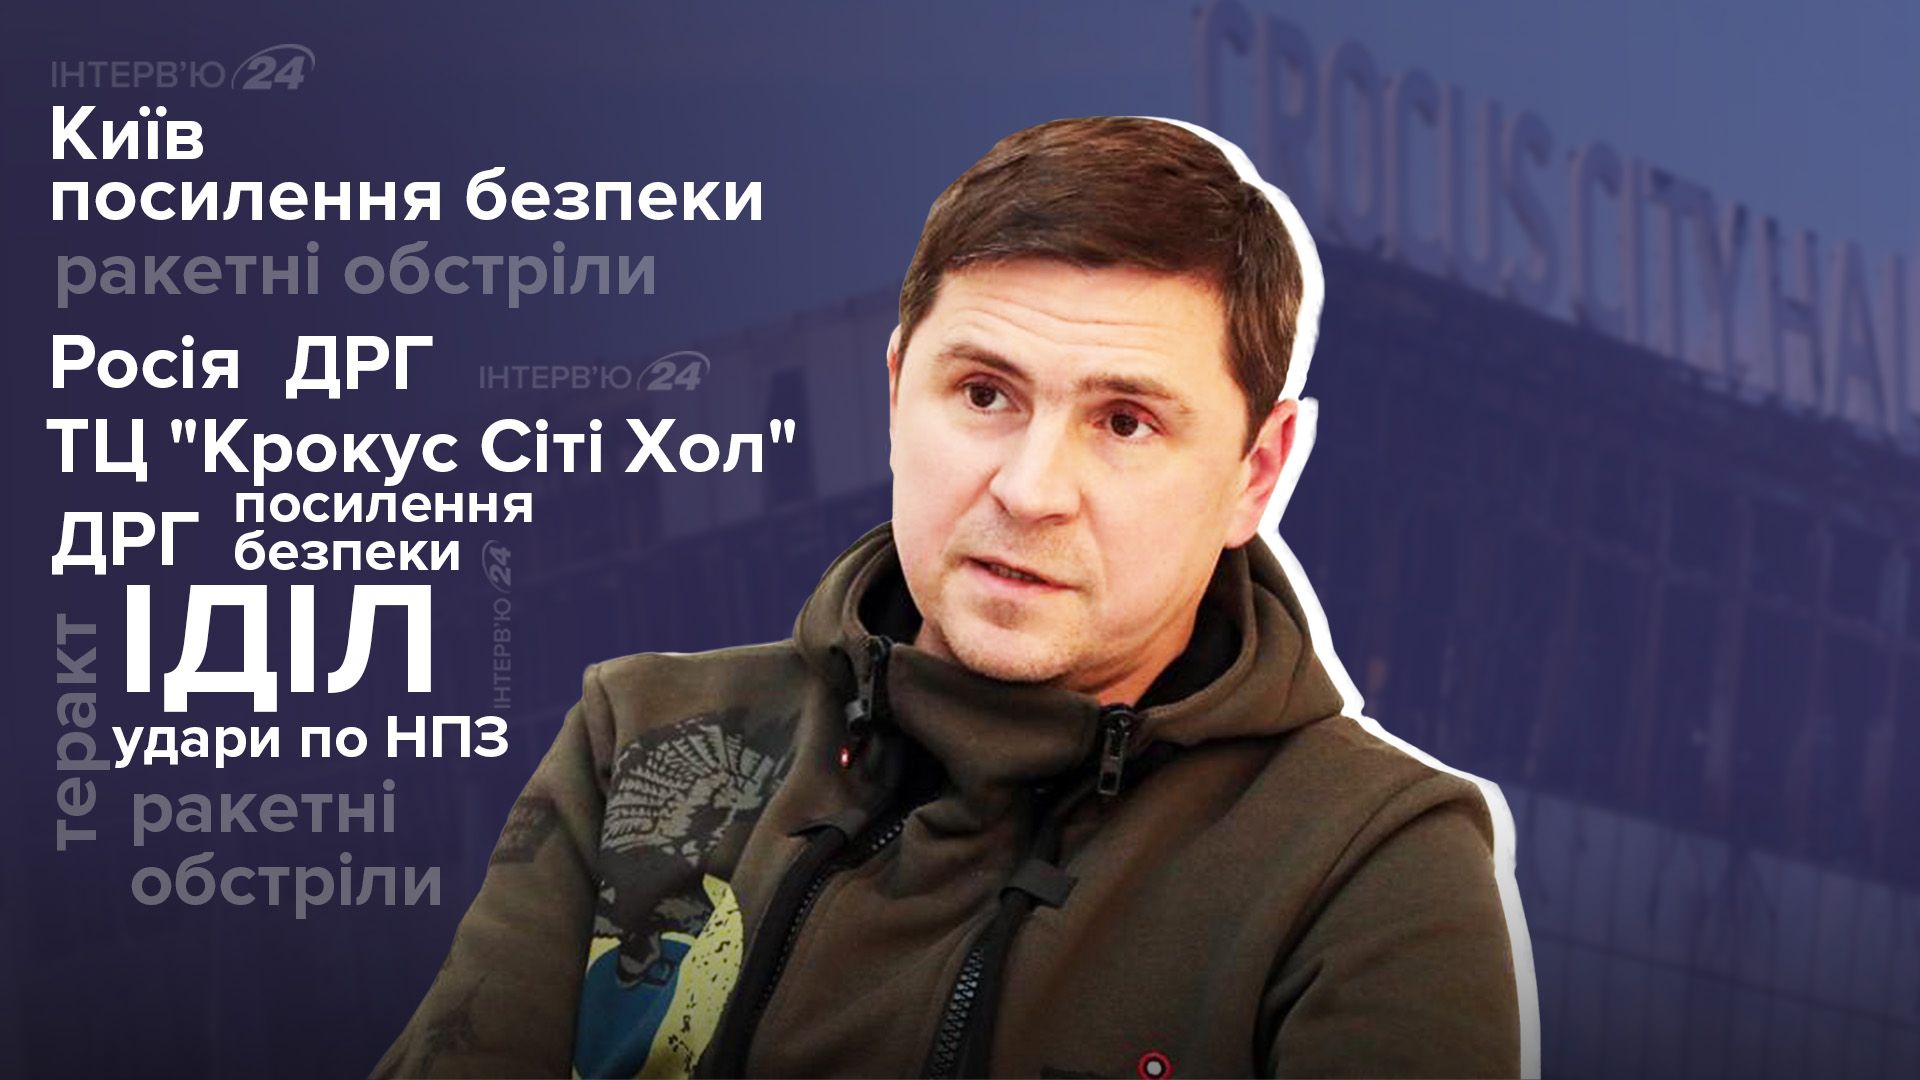 Крокус теракт - что скрывает Россия - Киев усилит безопасность - интервью с Подоляком - 24 Канал